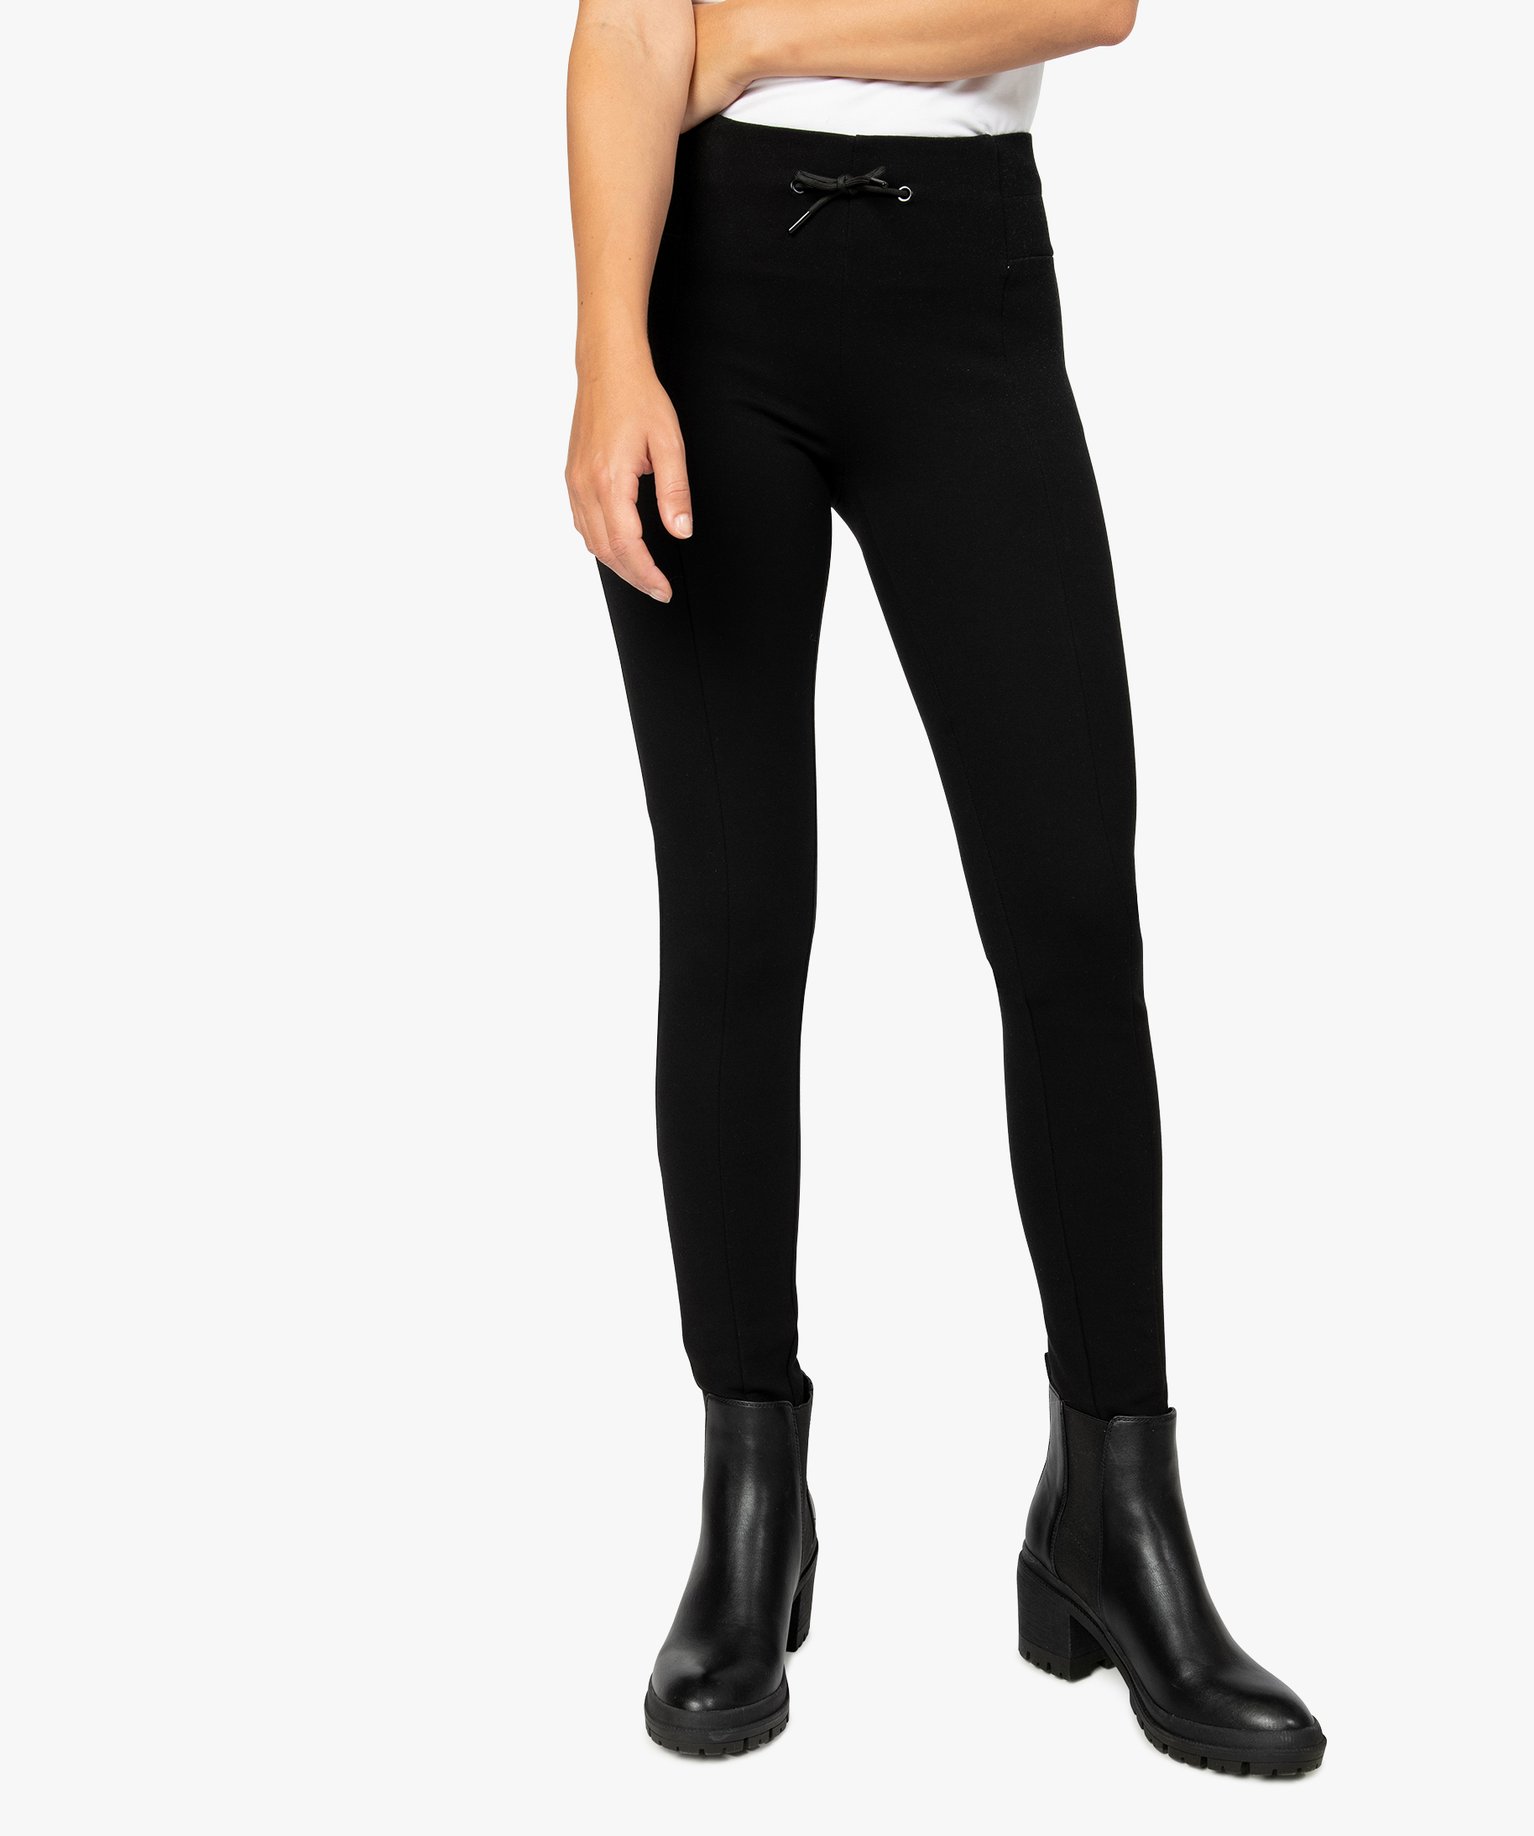 Femme Filles Extensible Leggings Noir Pantalon Jeggings ceinture élastique